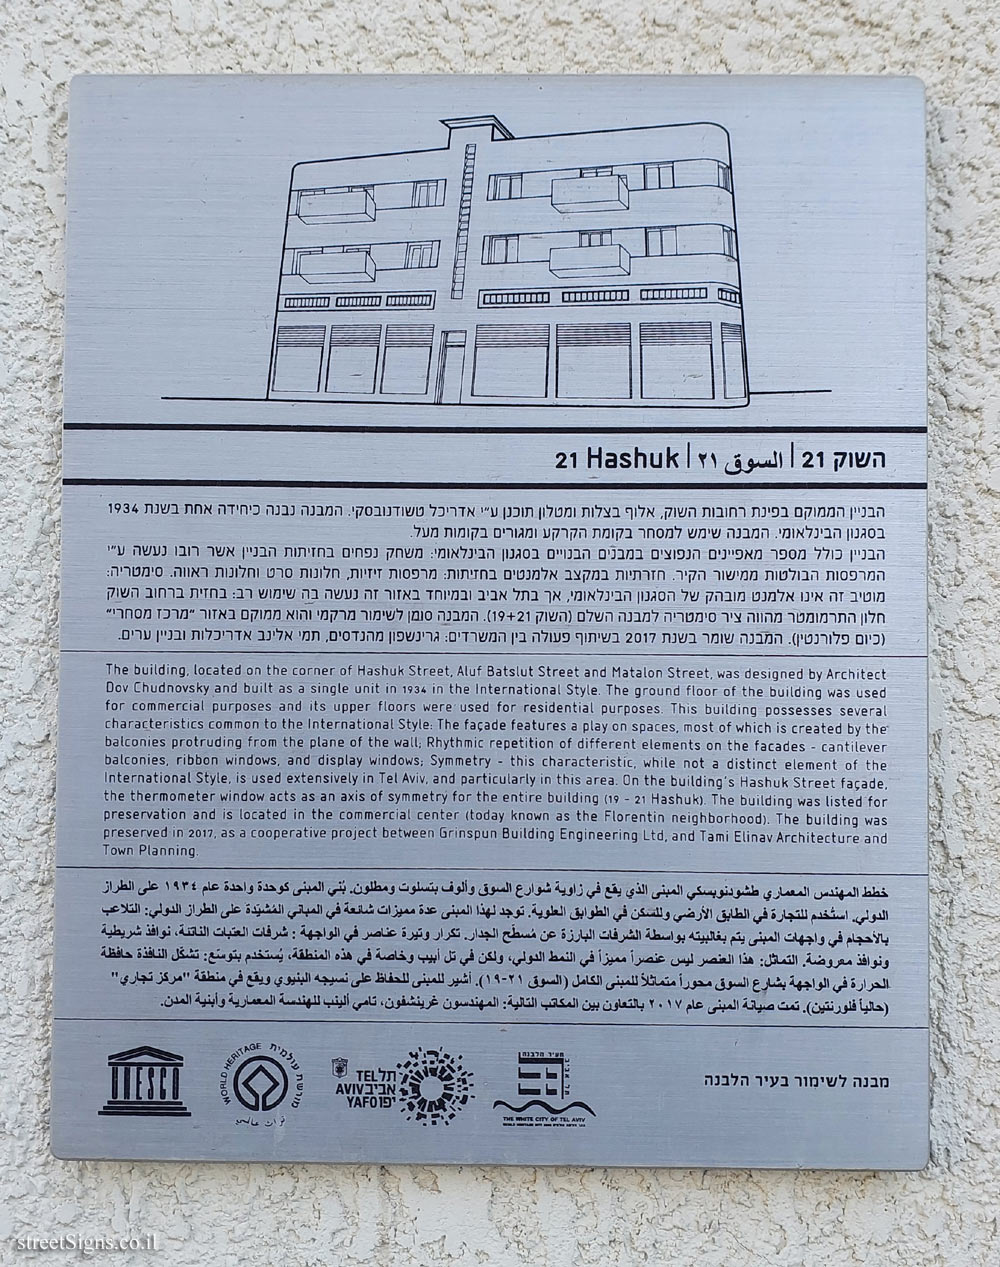 Tel Aviv - buildings for conservation - 21 Hashuk